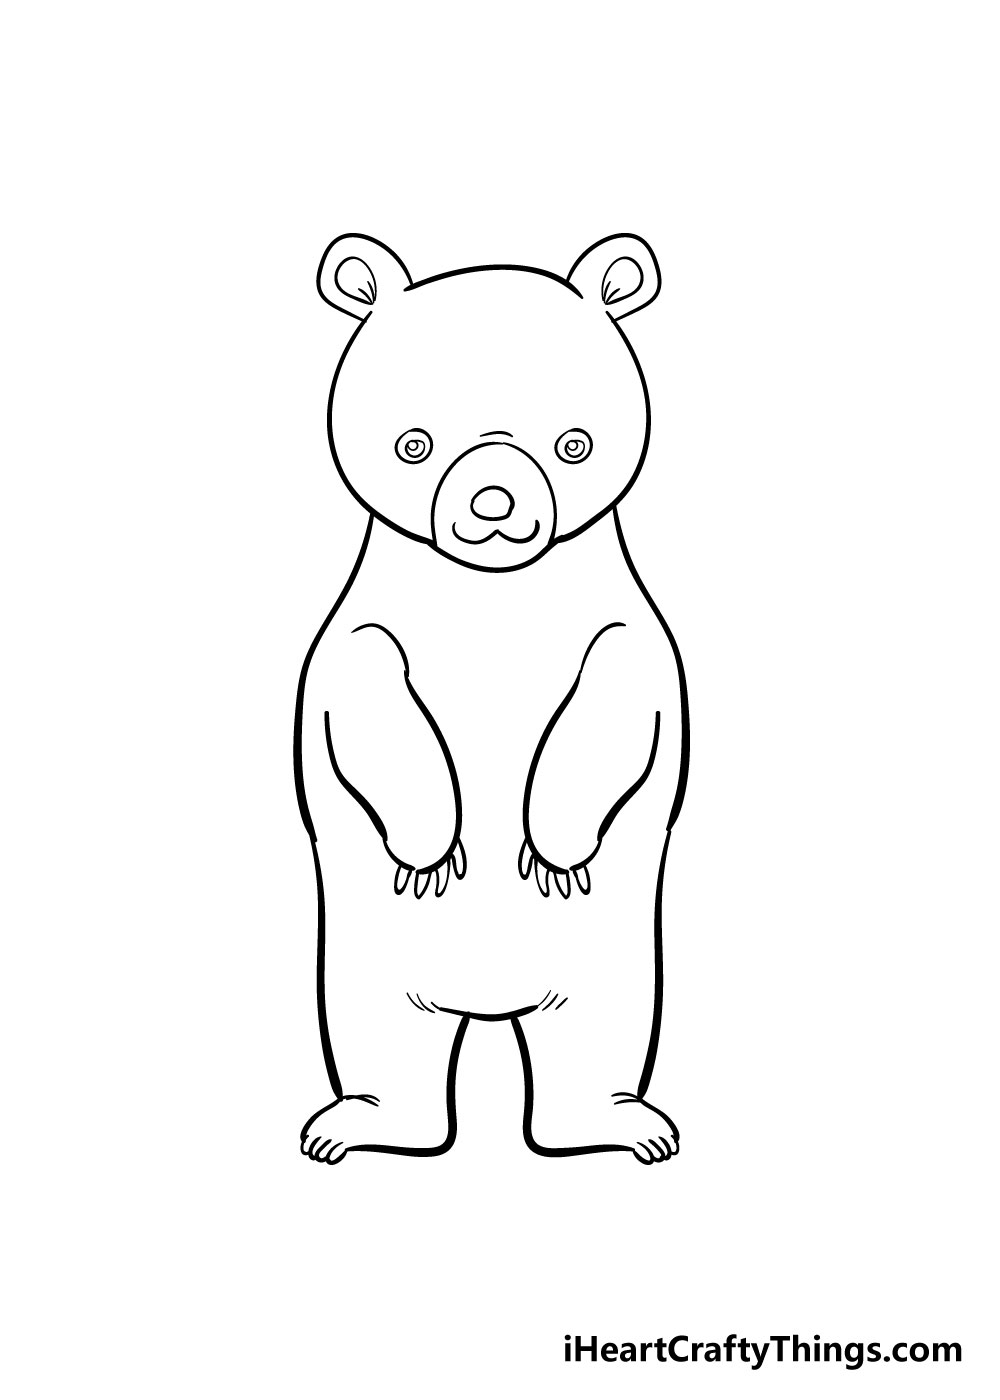 How to draw bear 7 - Cách vẽ con gấu dễ thương đơn giản với 8 bước